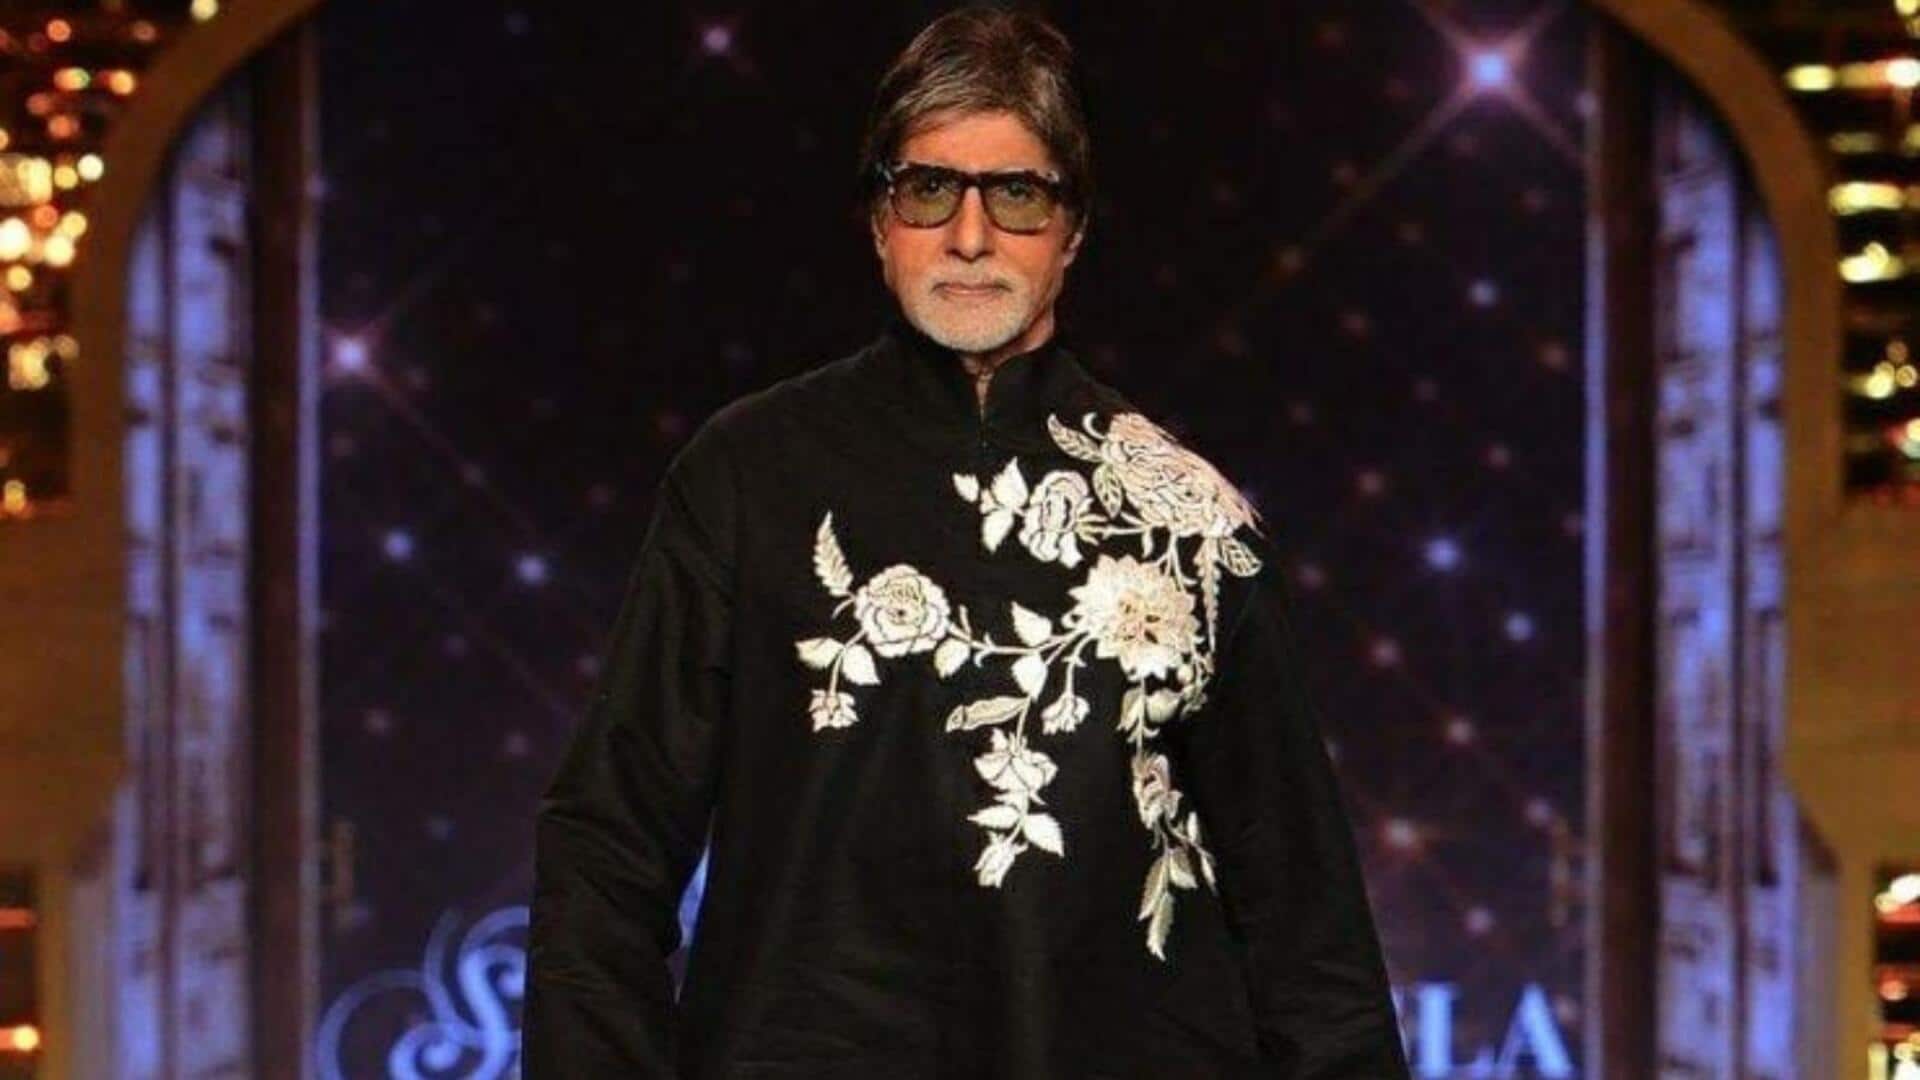 अमिताभ बच्चन ने तोड़ी नंगे पैर प्रशंसकों से मिलने की अपनी परंपरा, खुद बताई वजह